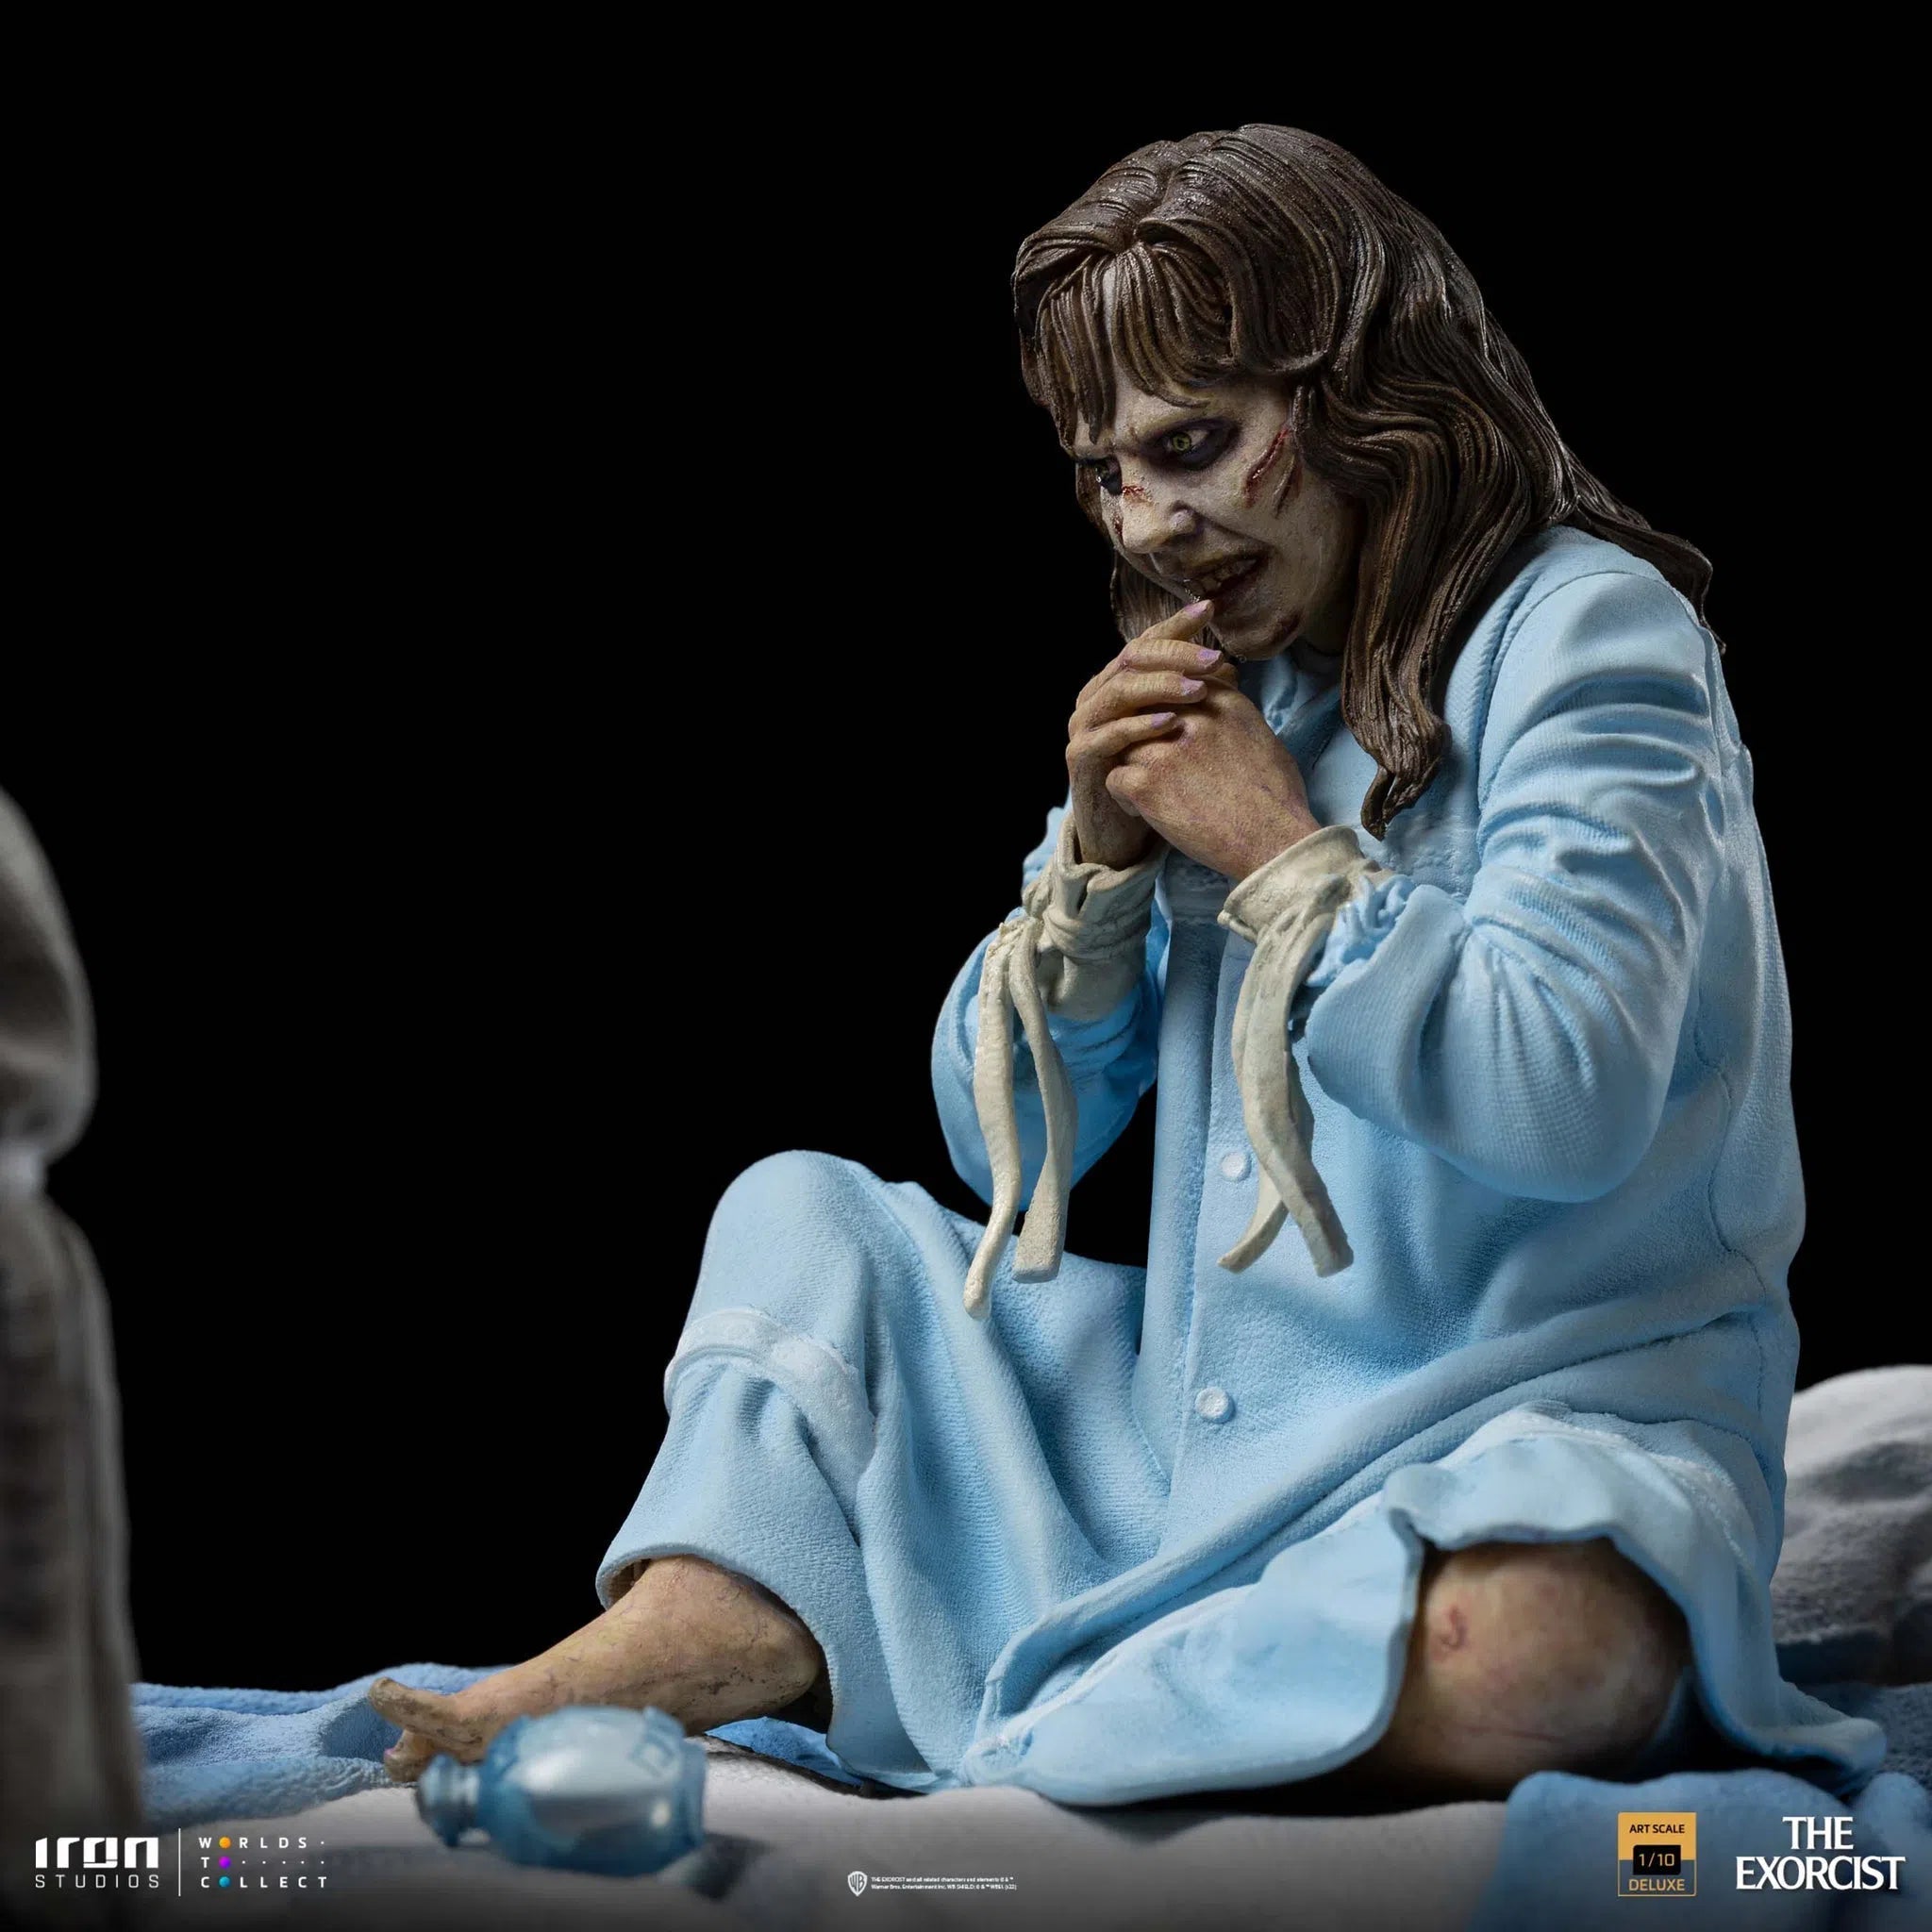 The Exorcist: Possessed Regan McNeil: Deluxe: Art Statue 1/10: Iron Studios